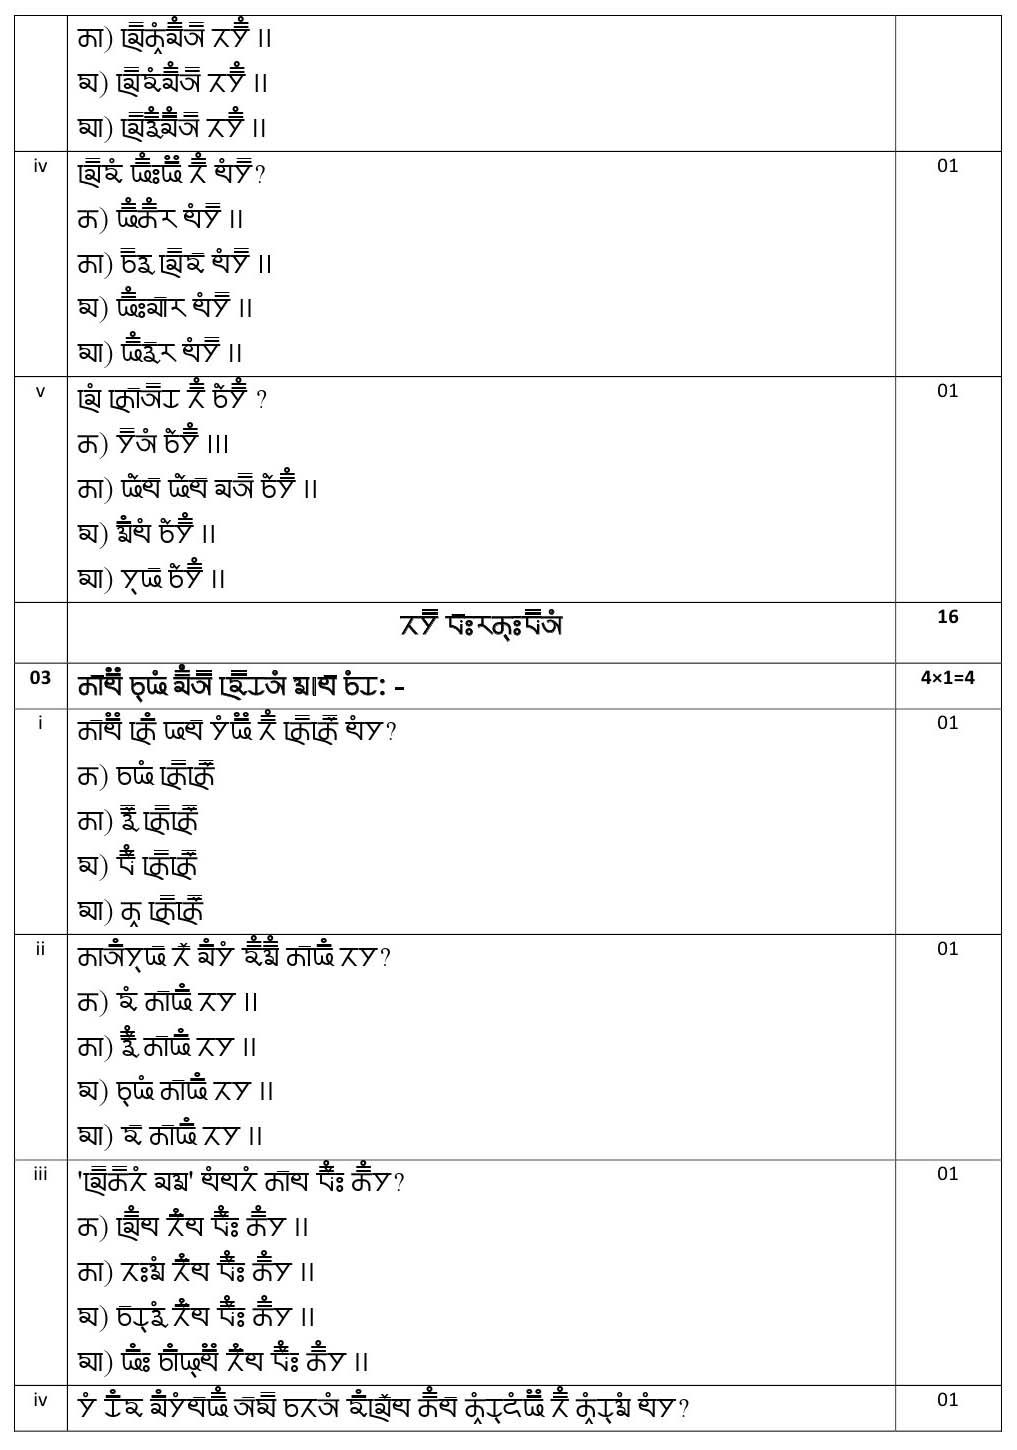 Gurung CBSE Class X Sample Question Paper 2020 21 - Image 6